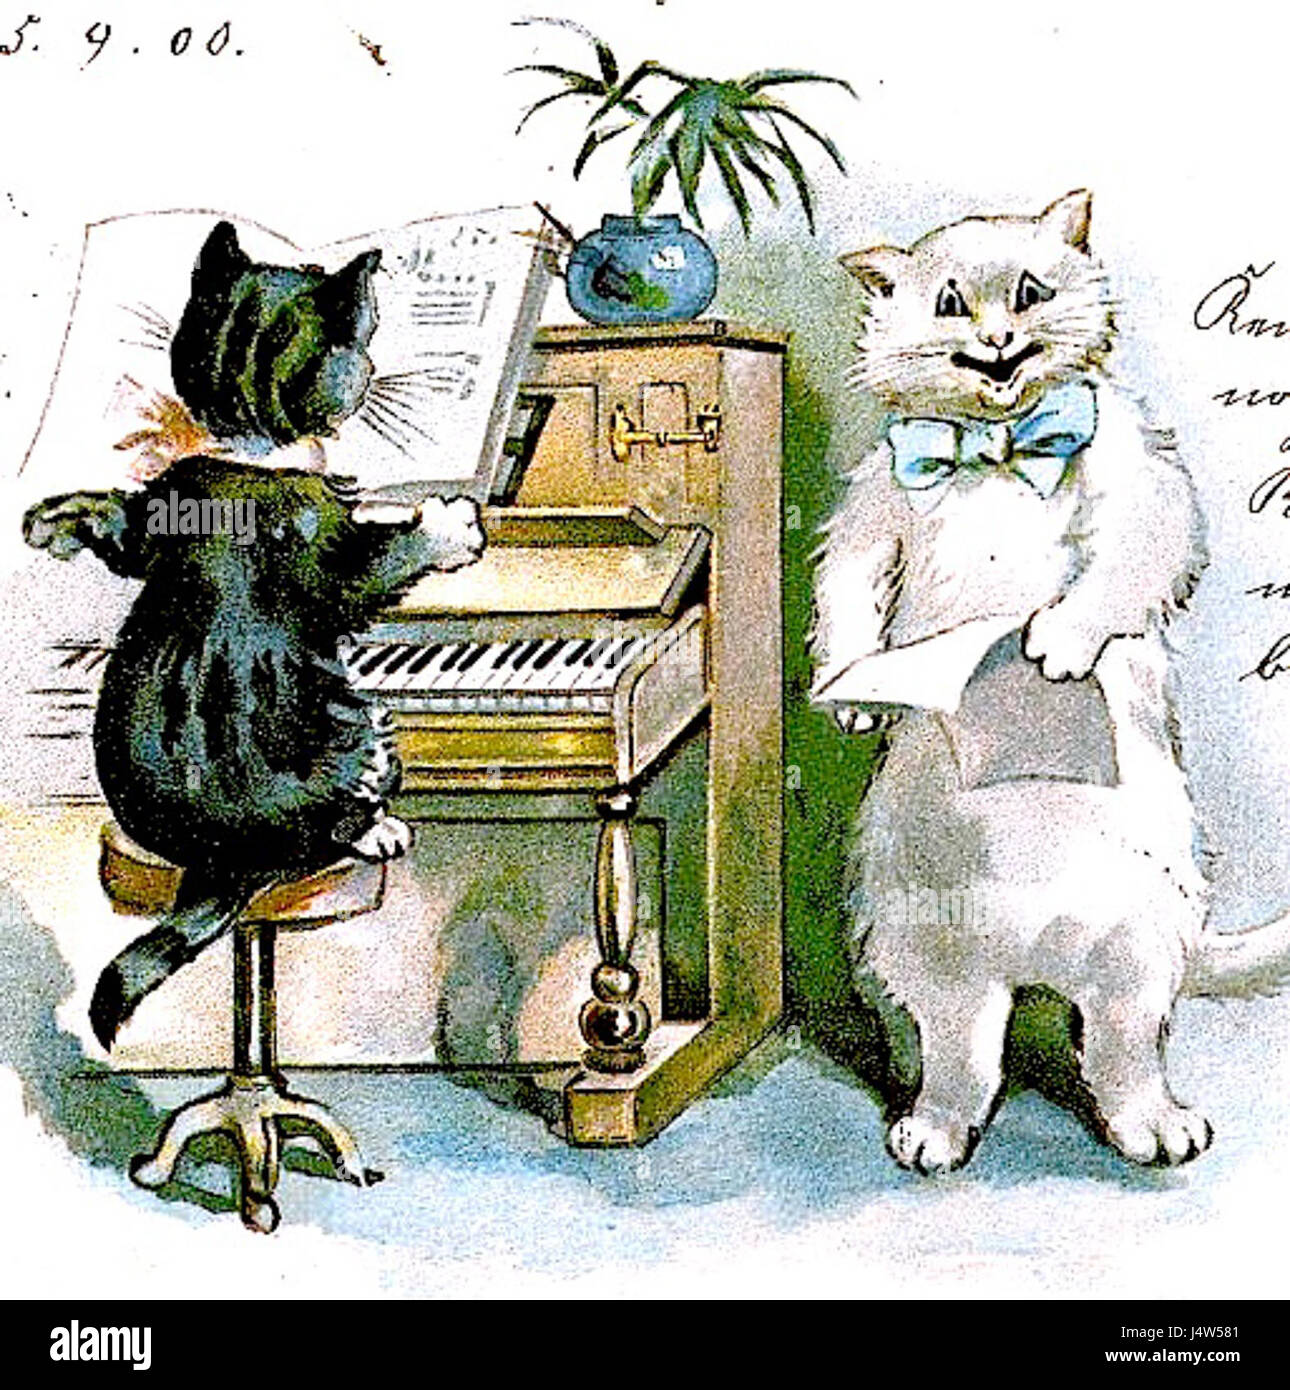 Котята кошки поют. Кот за роялем. Кот на пианино. Кошка за пианино. Коты на фортепиано.